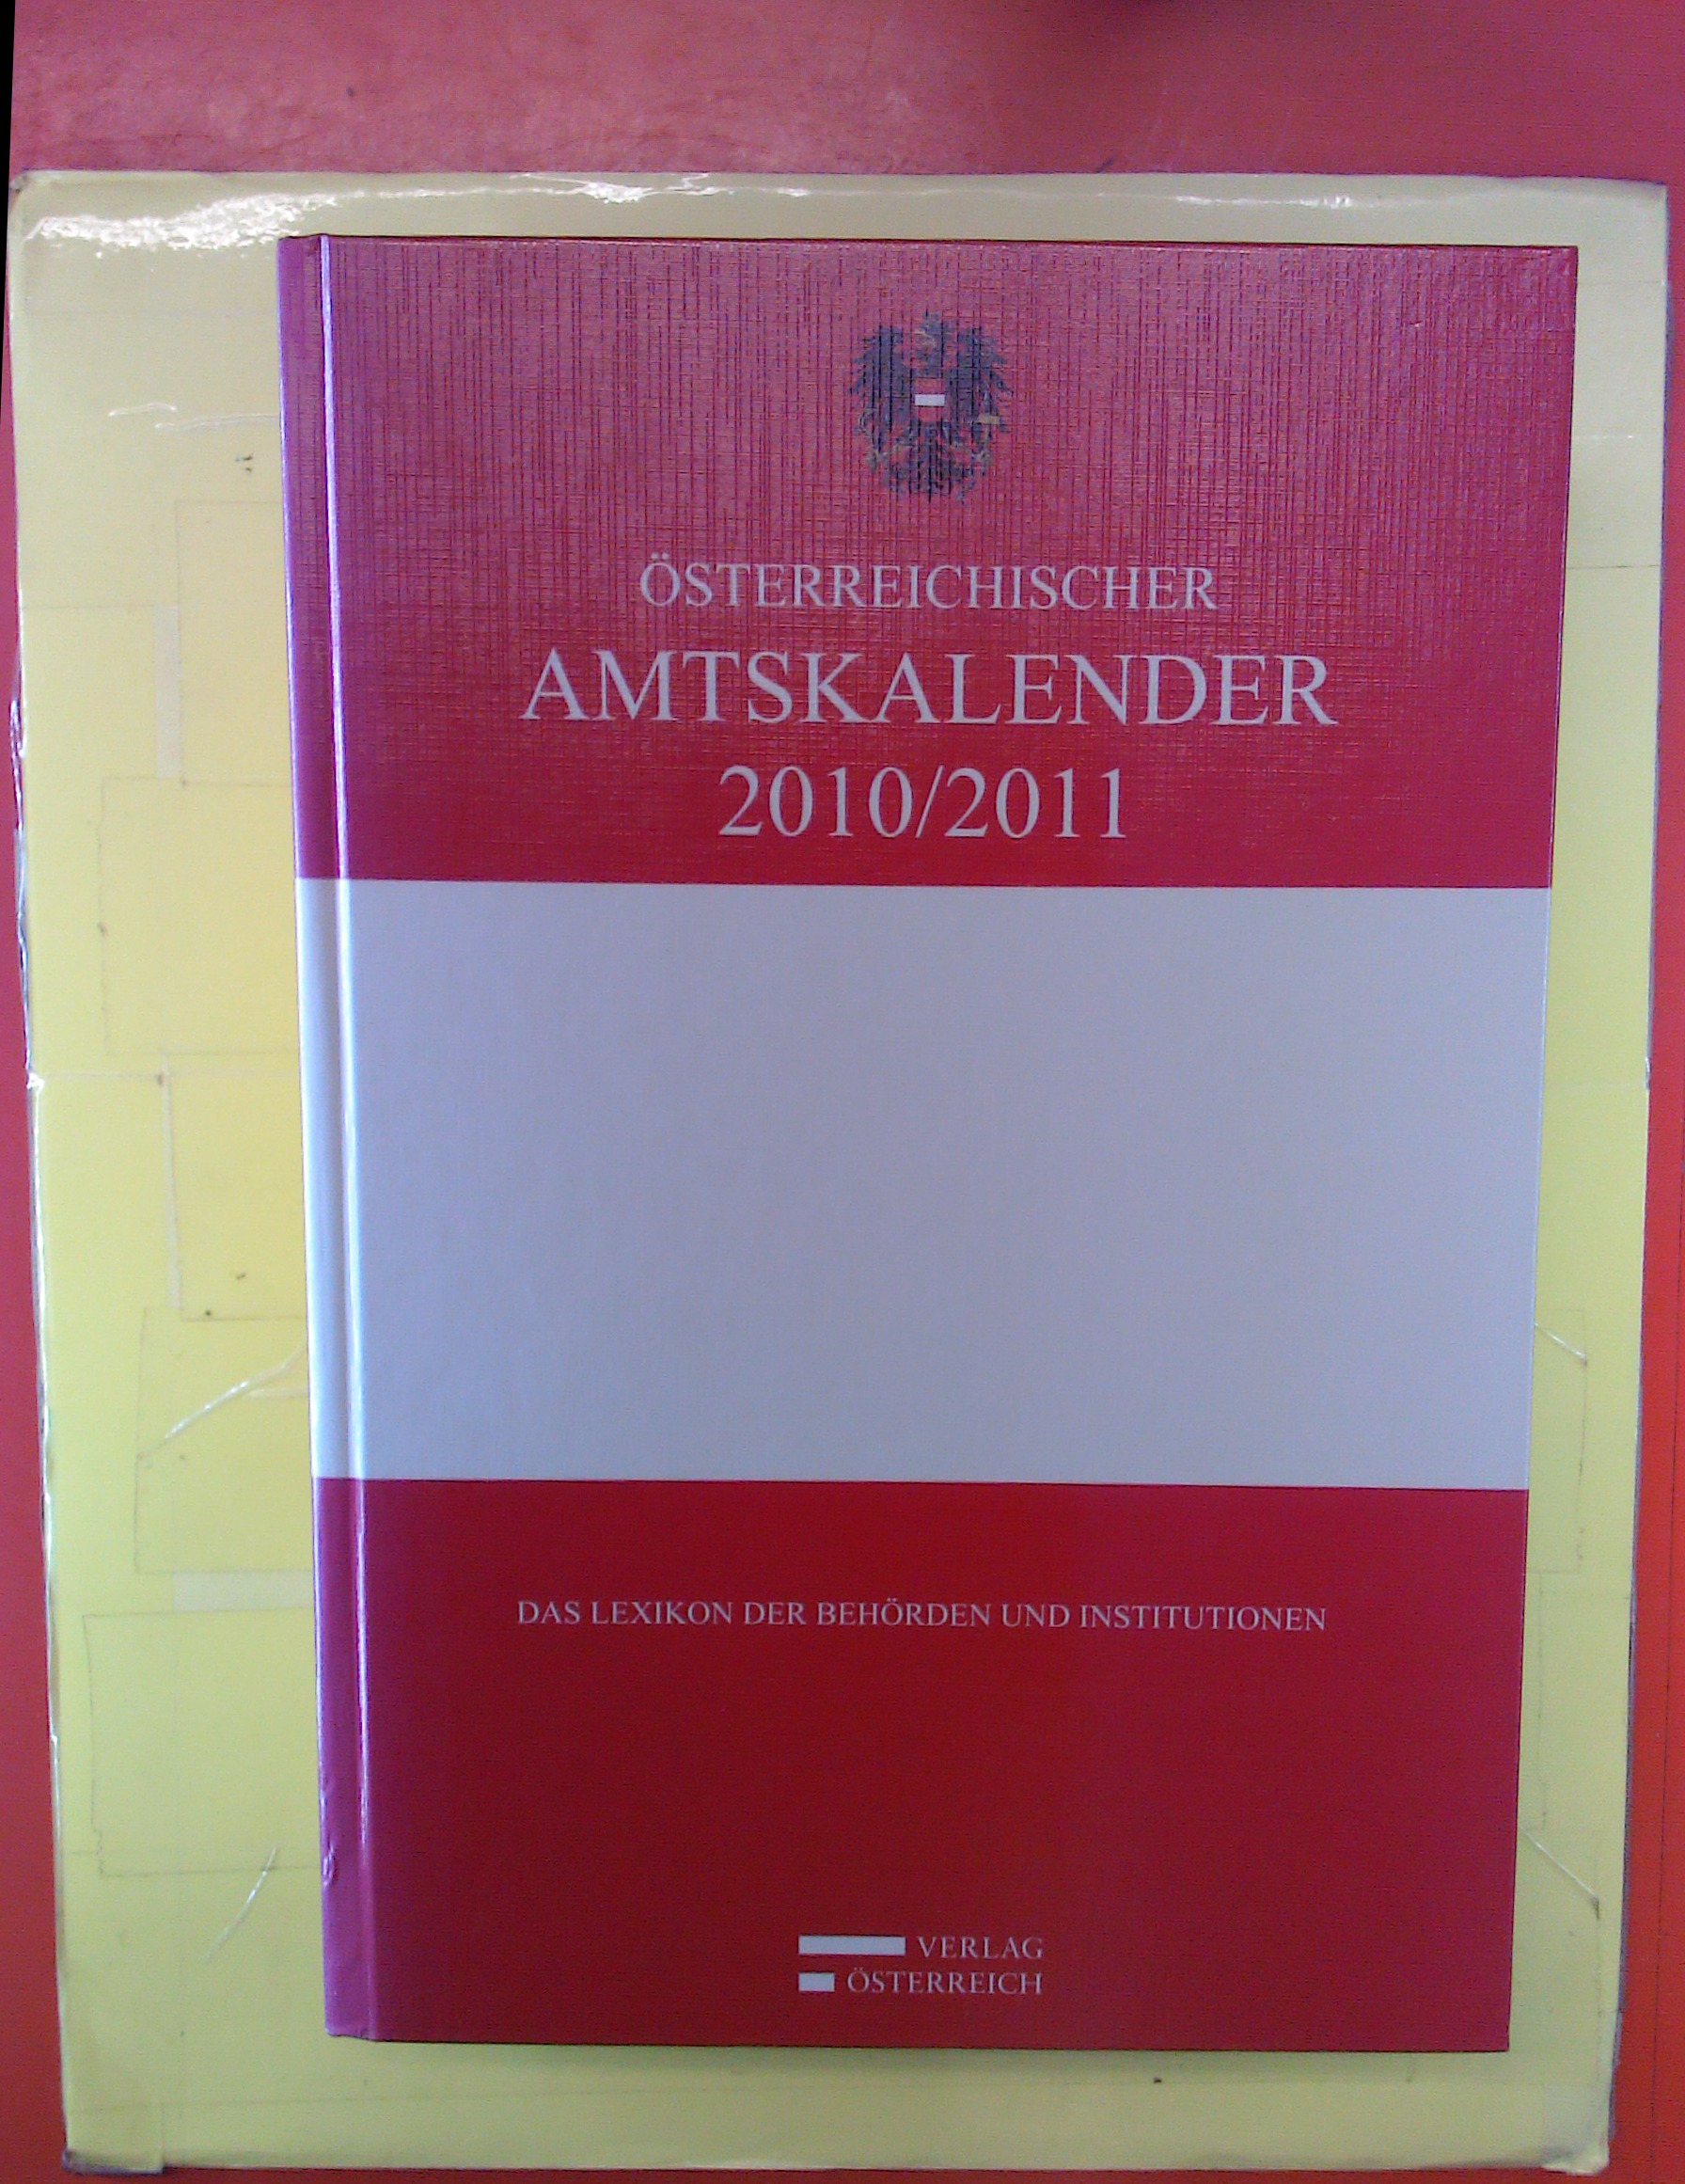 Österreichischer Amtskalender 2010 / 2011 - Das Lexikon der Behörden und Institutionen - Hrsg: Verlag Österreich GmbH